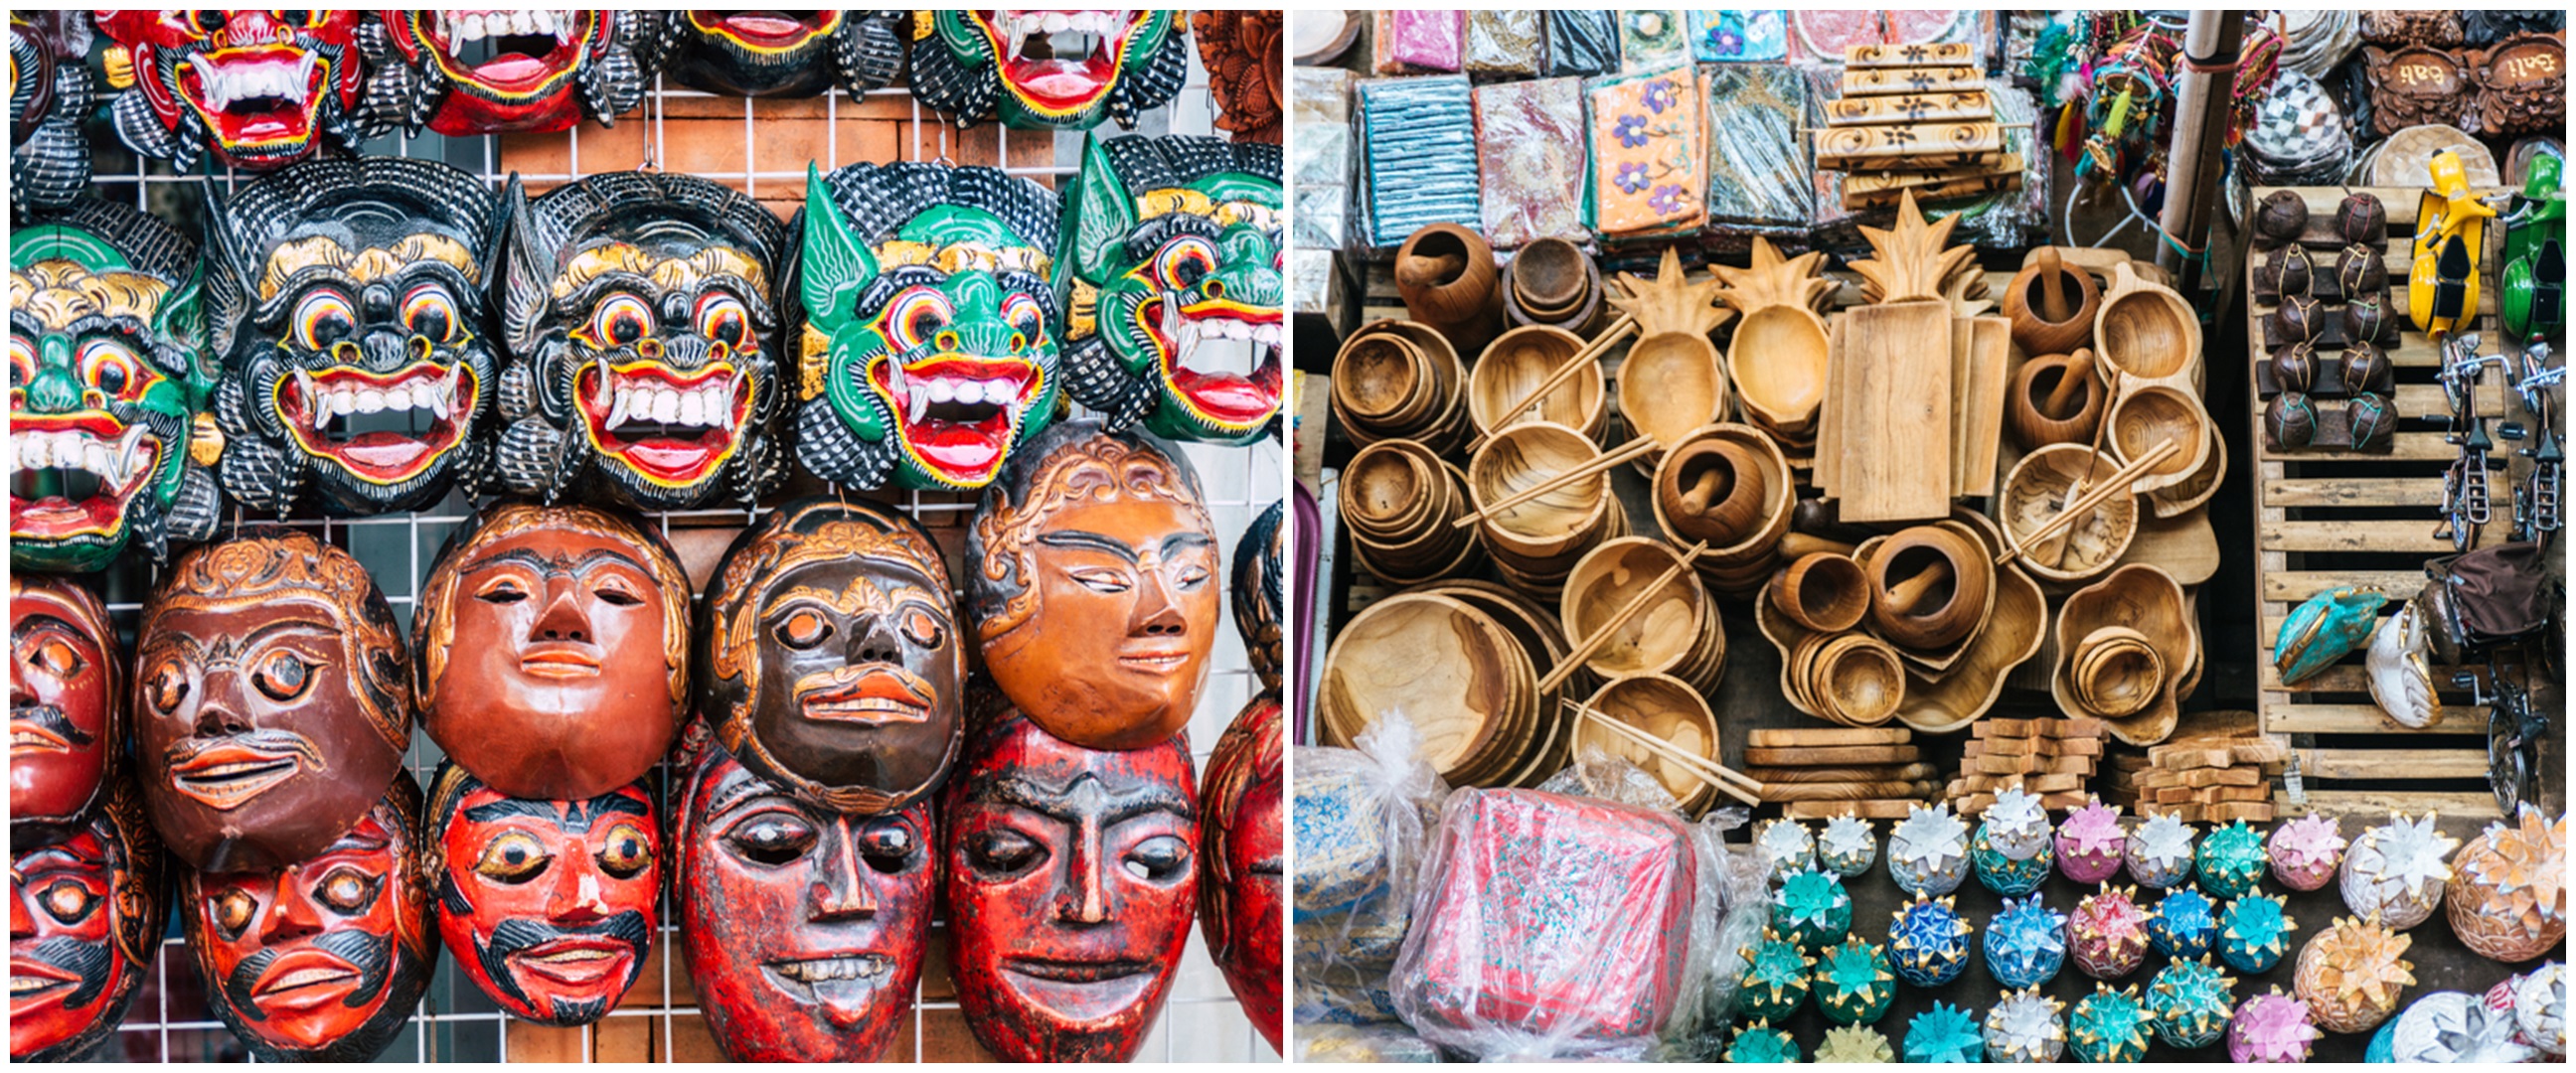 5 Item favorit turis luar negeri di Kuta Art Market, batik Bali diburu